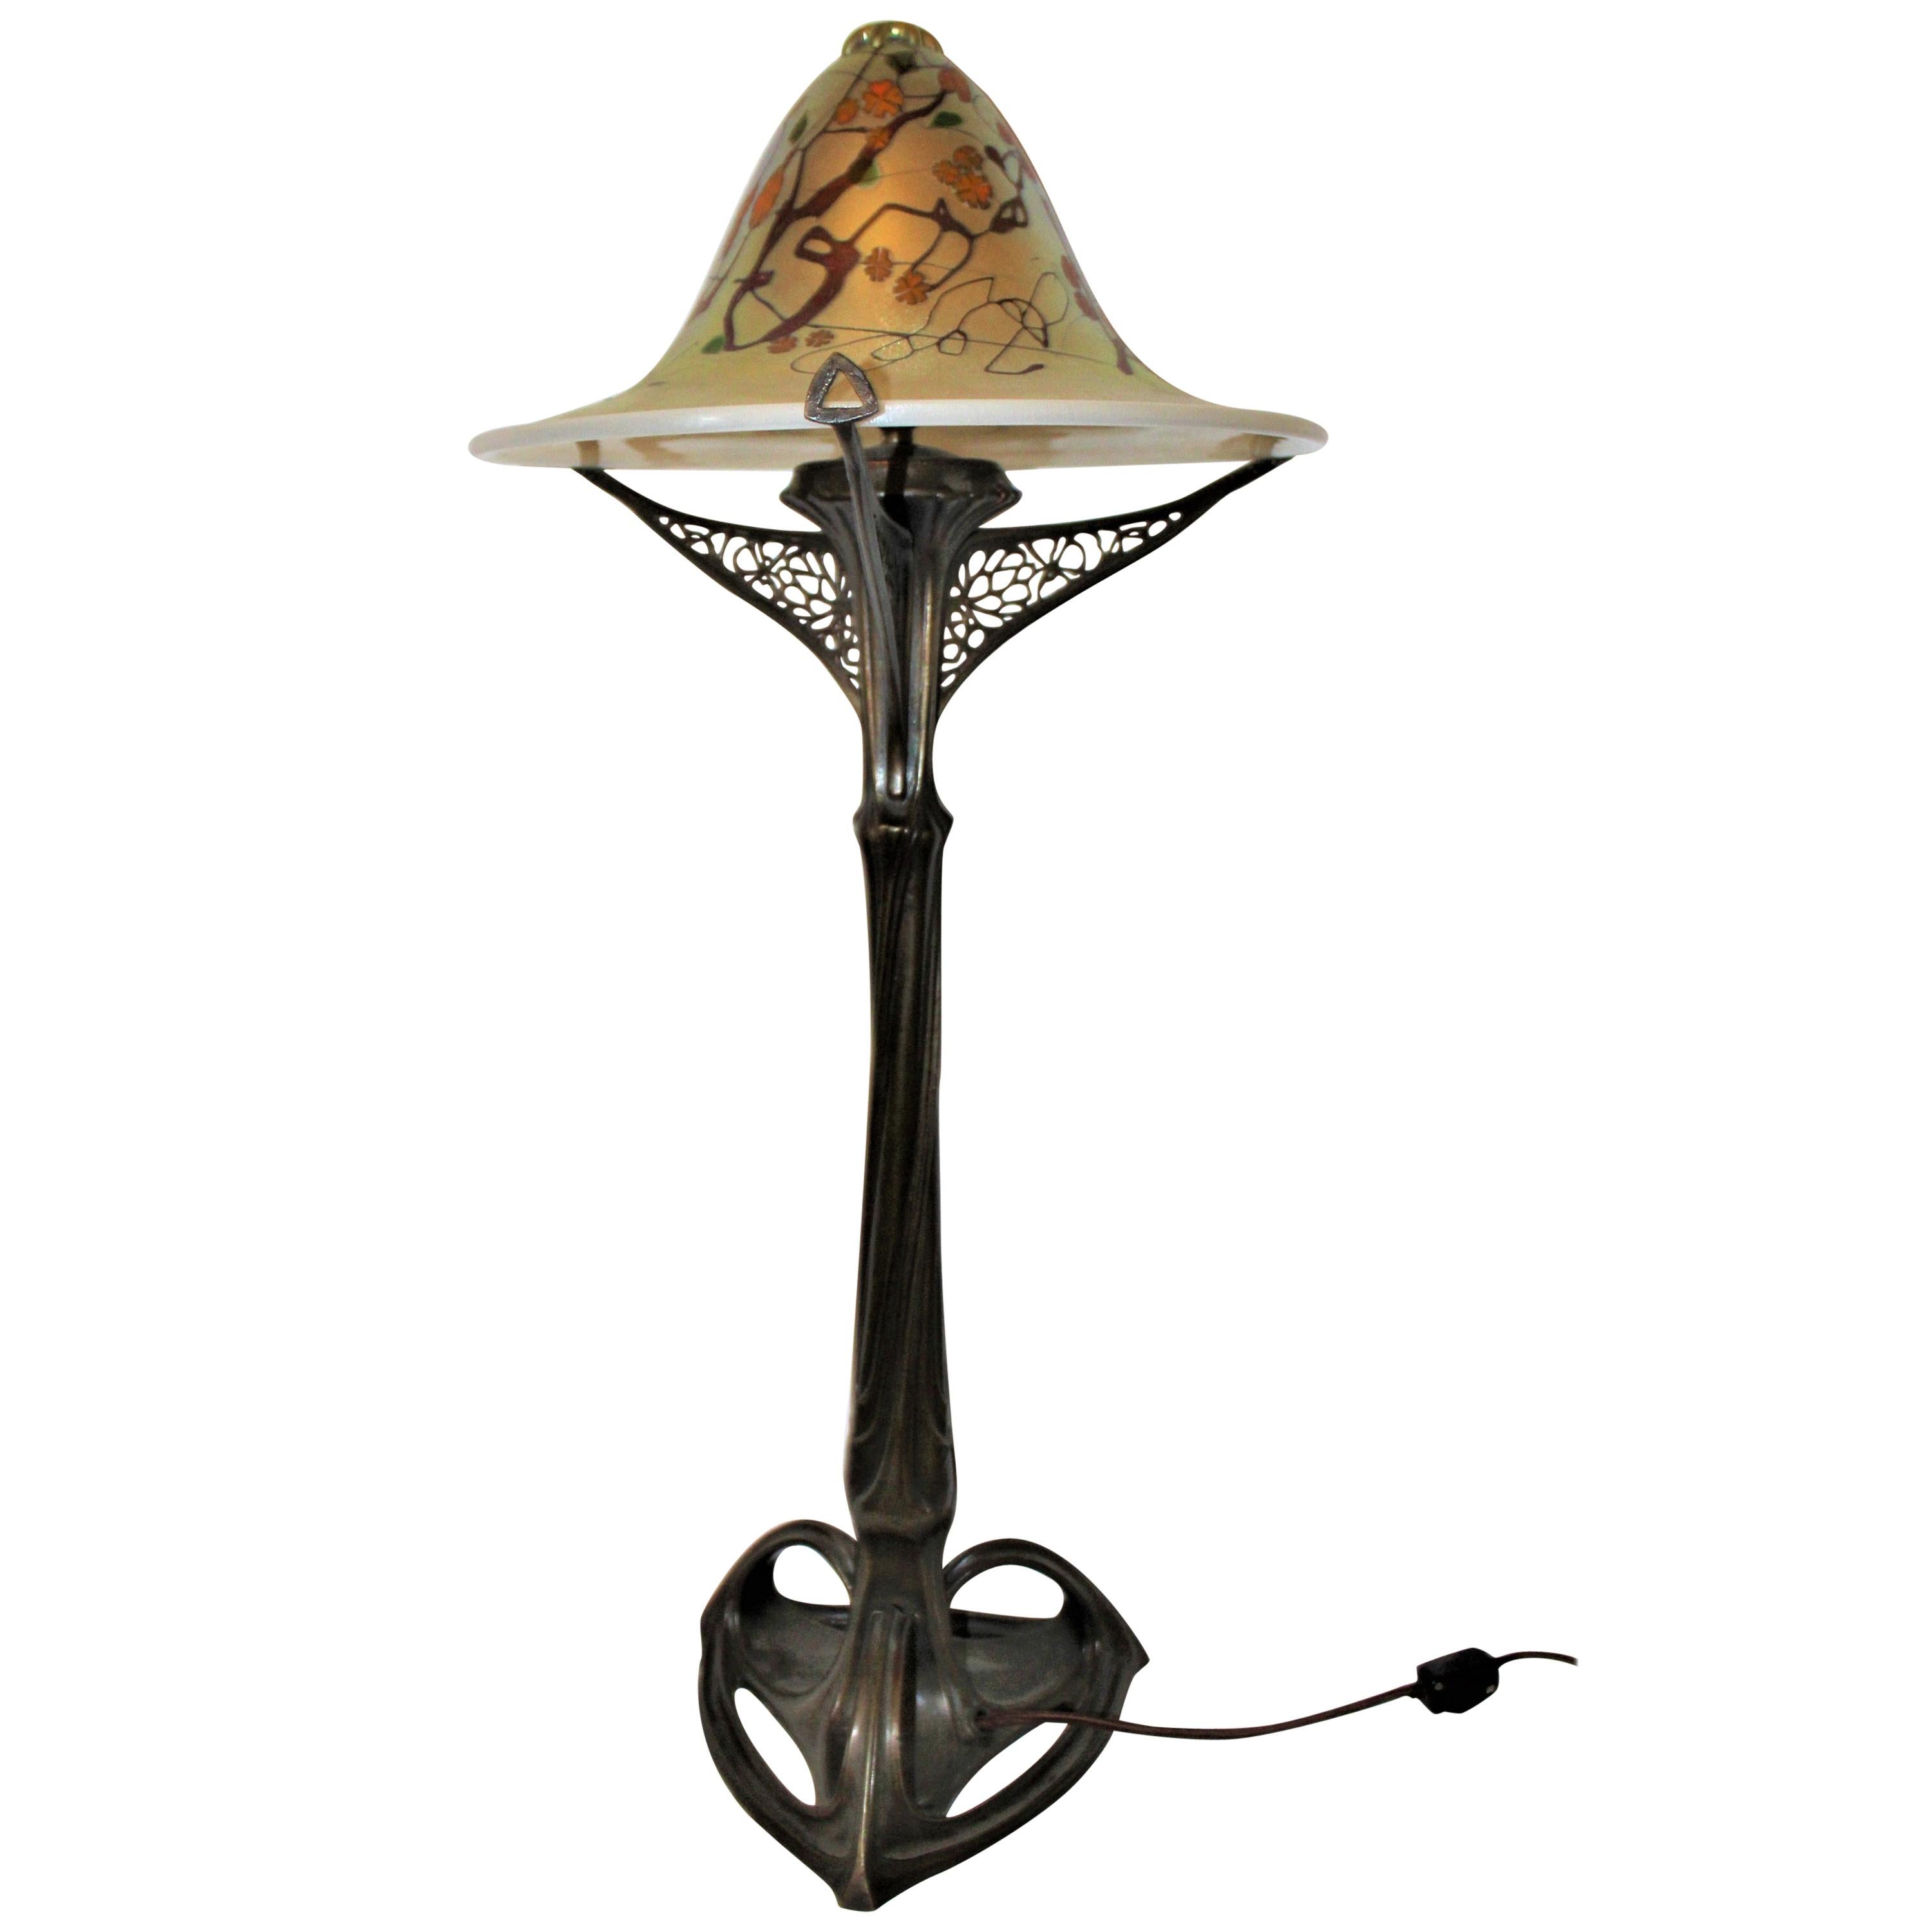 Art Nouveau Lamp, Art Glass Shade, Bronze Casting, after Louis Majorelle